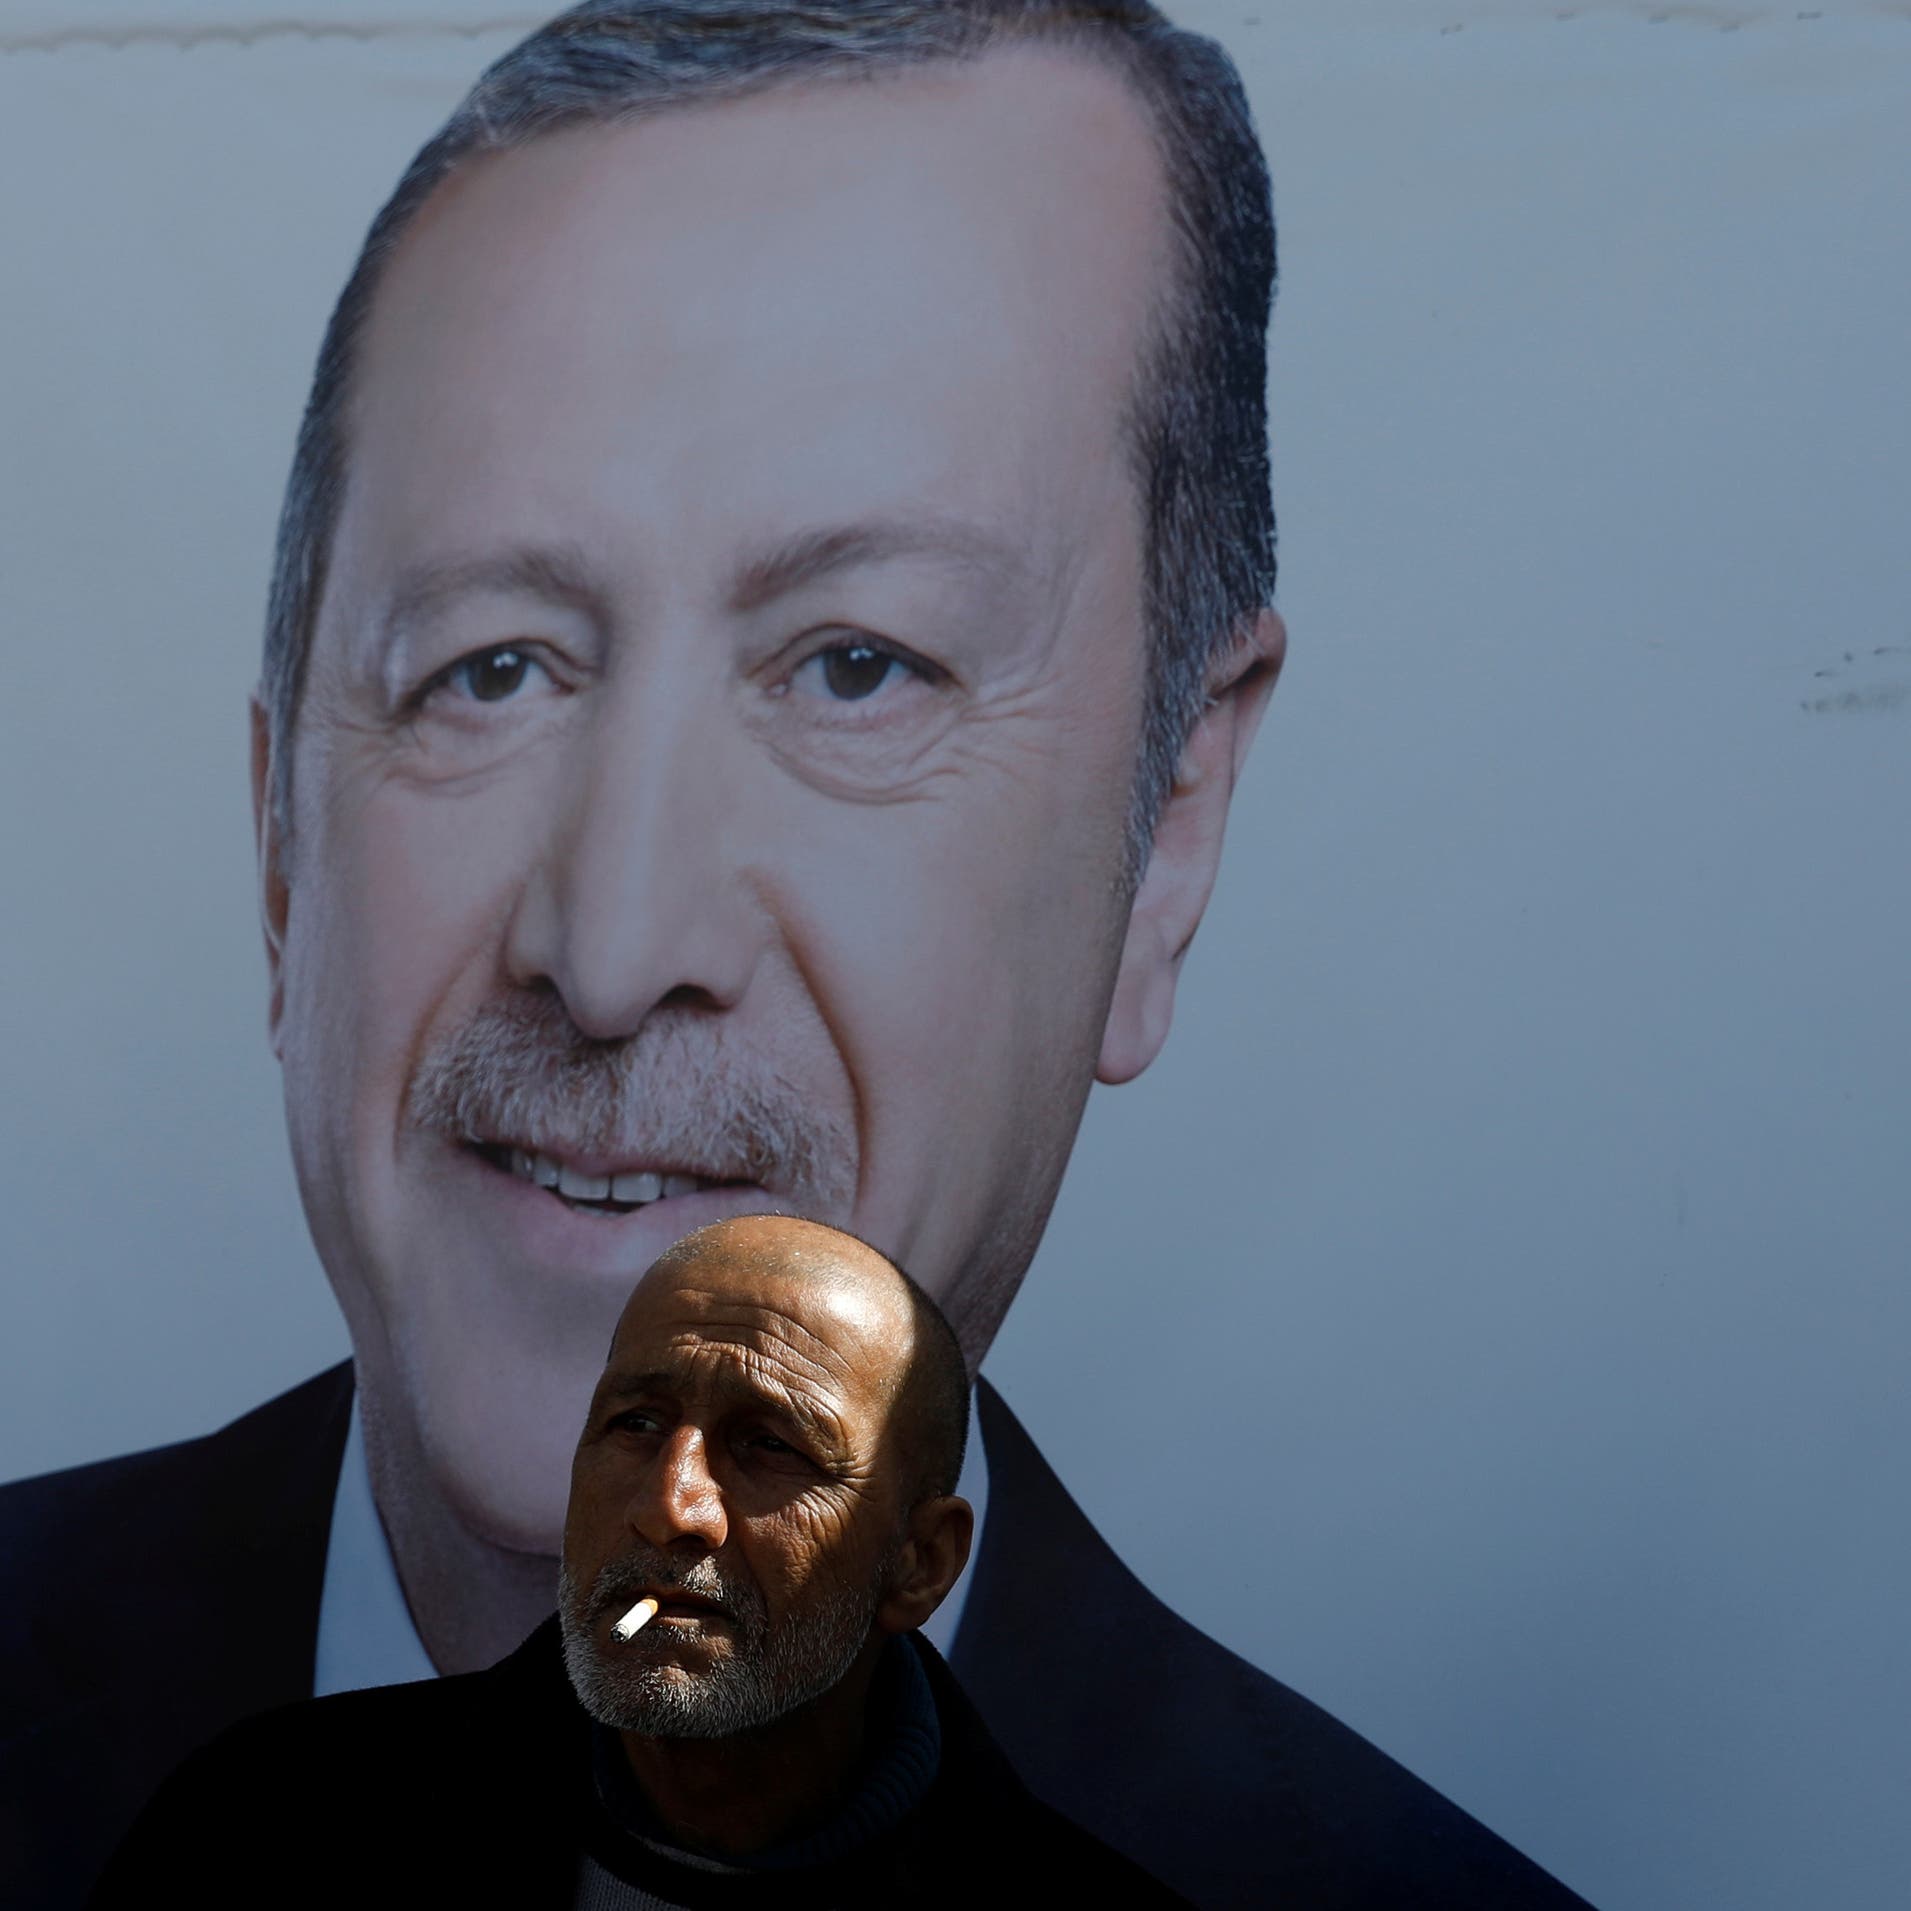 إدانة أوروبية لتركيا.. بسبب "قانون إهانة أردوغان"